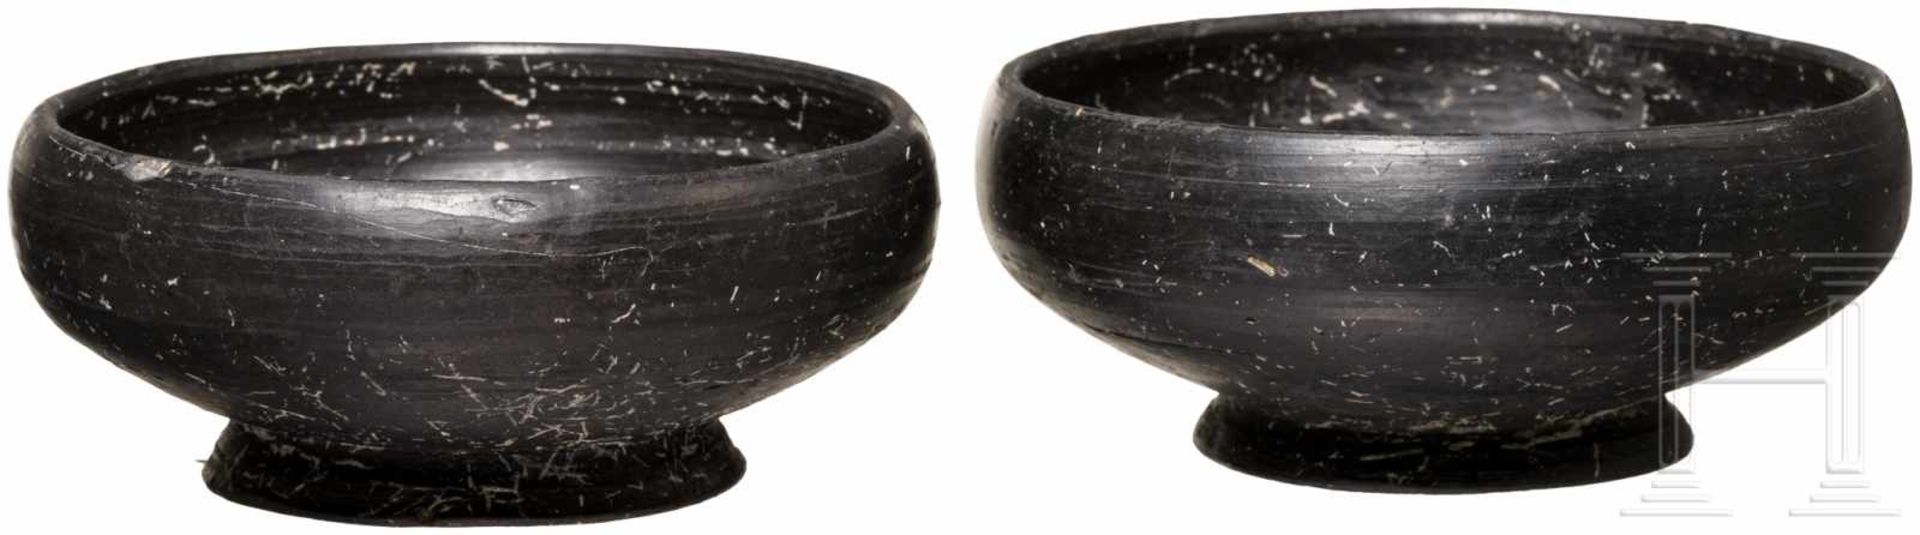 Zwei Bucchero-Schalen, 6. Jhdt. v. Chr.Zwei unverzierte, kleine Schalen mit Standring. Vollständig